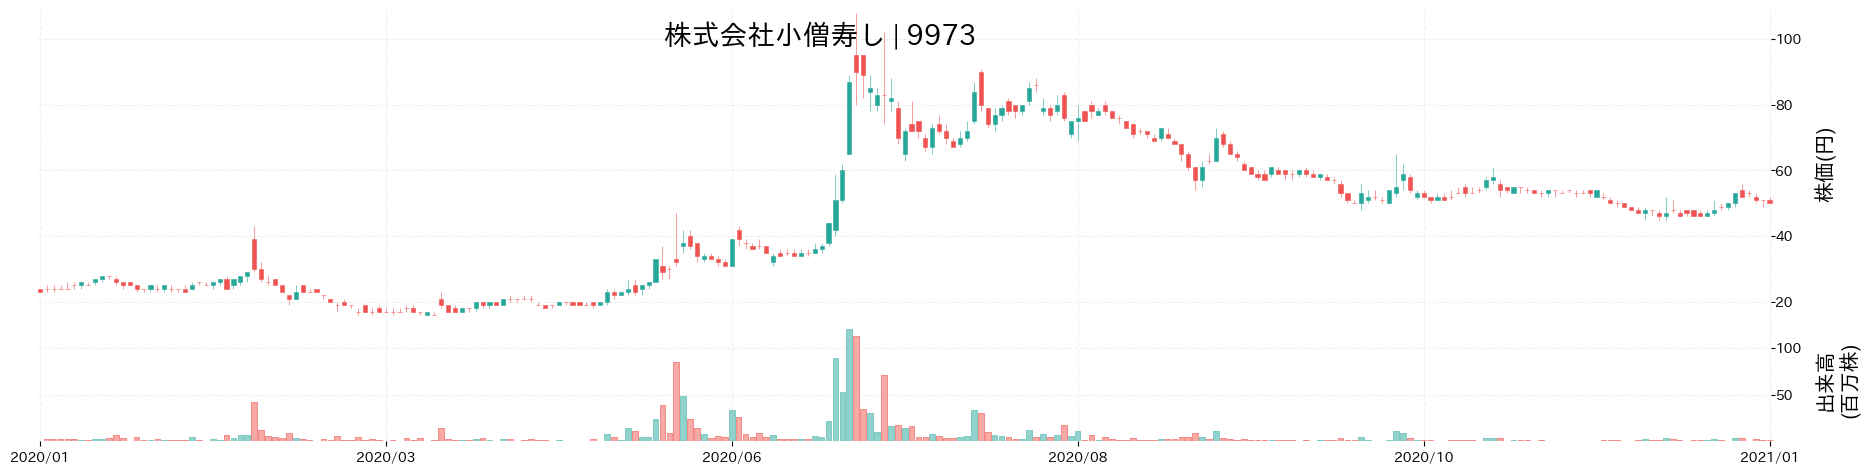 小僧寿しの株価推移(2020)